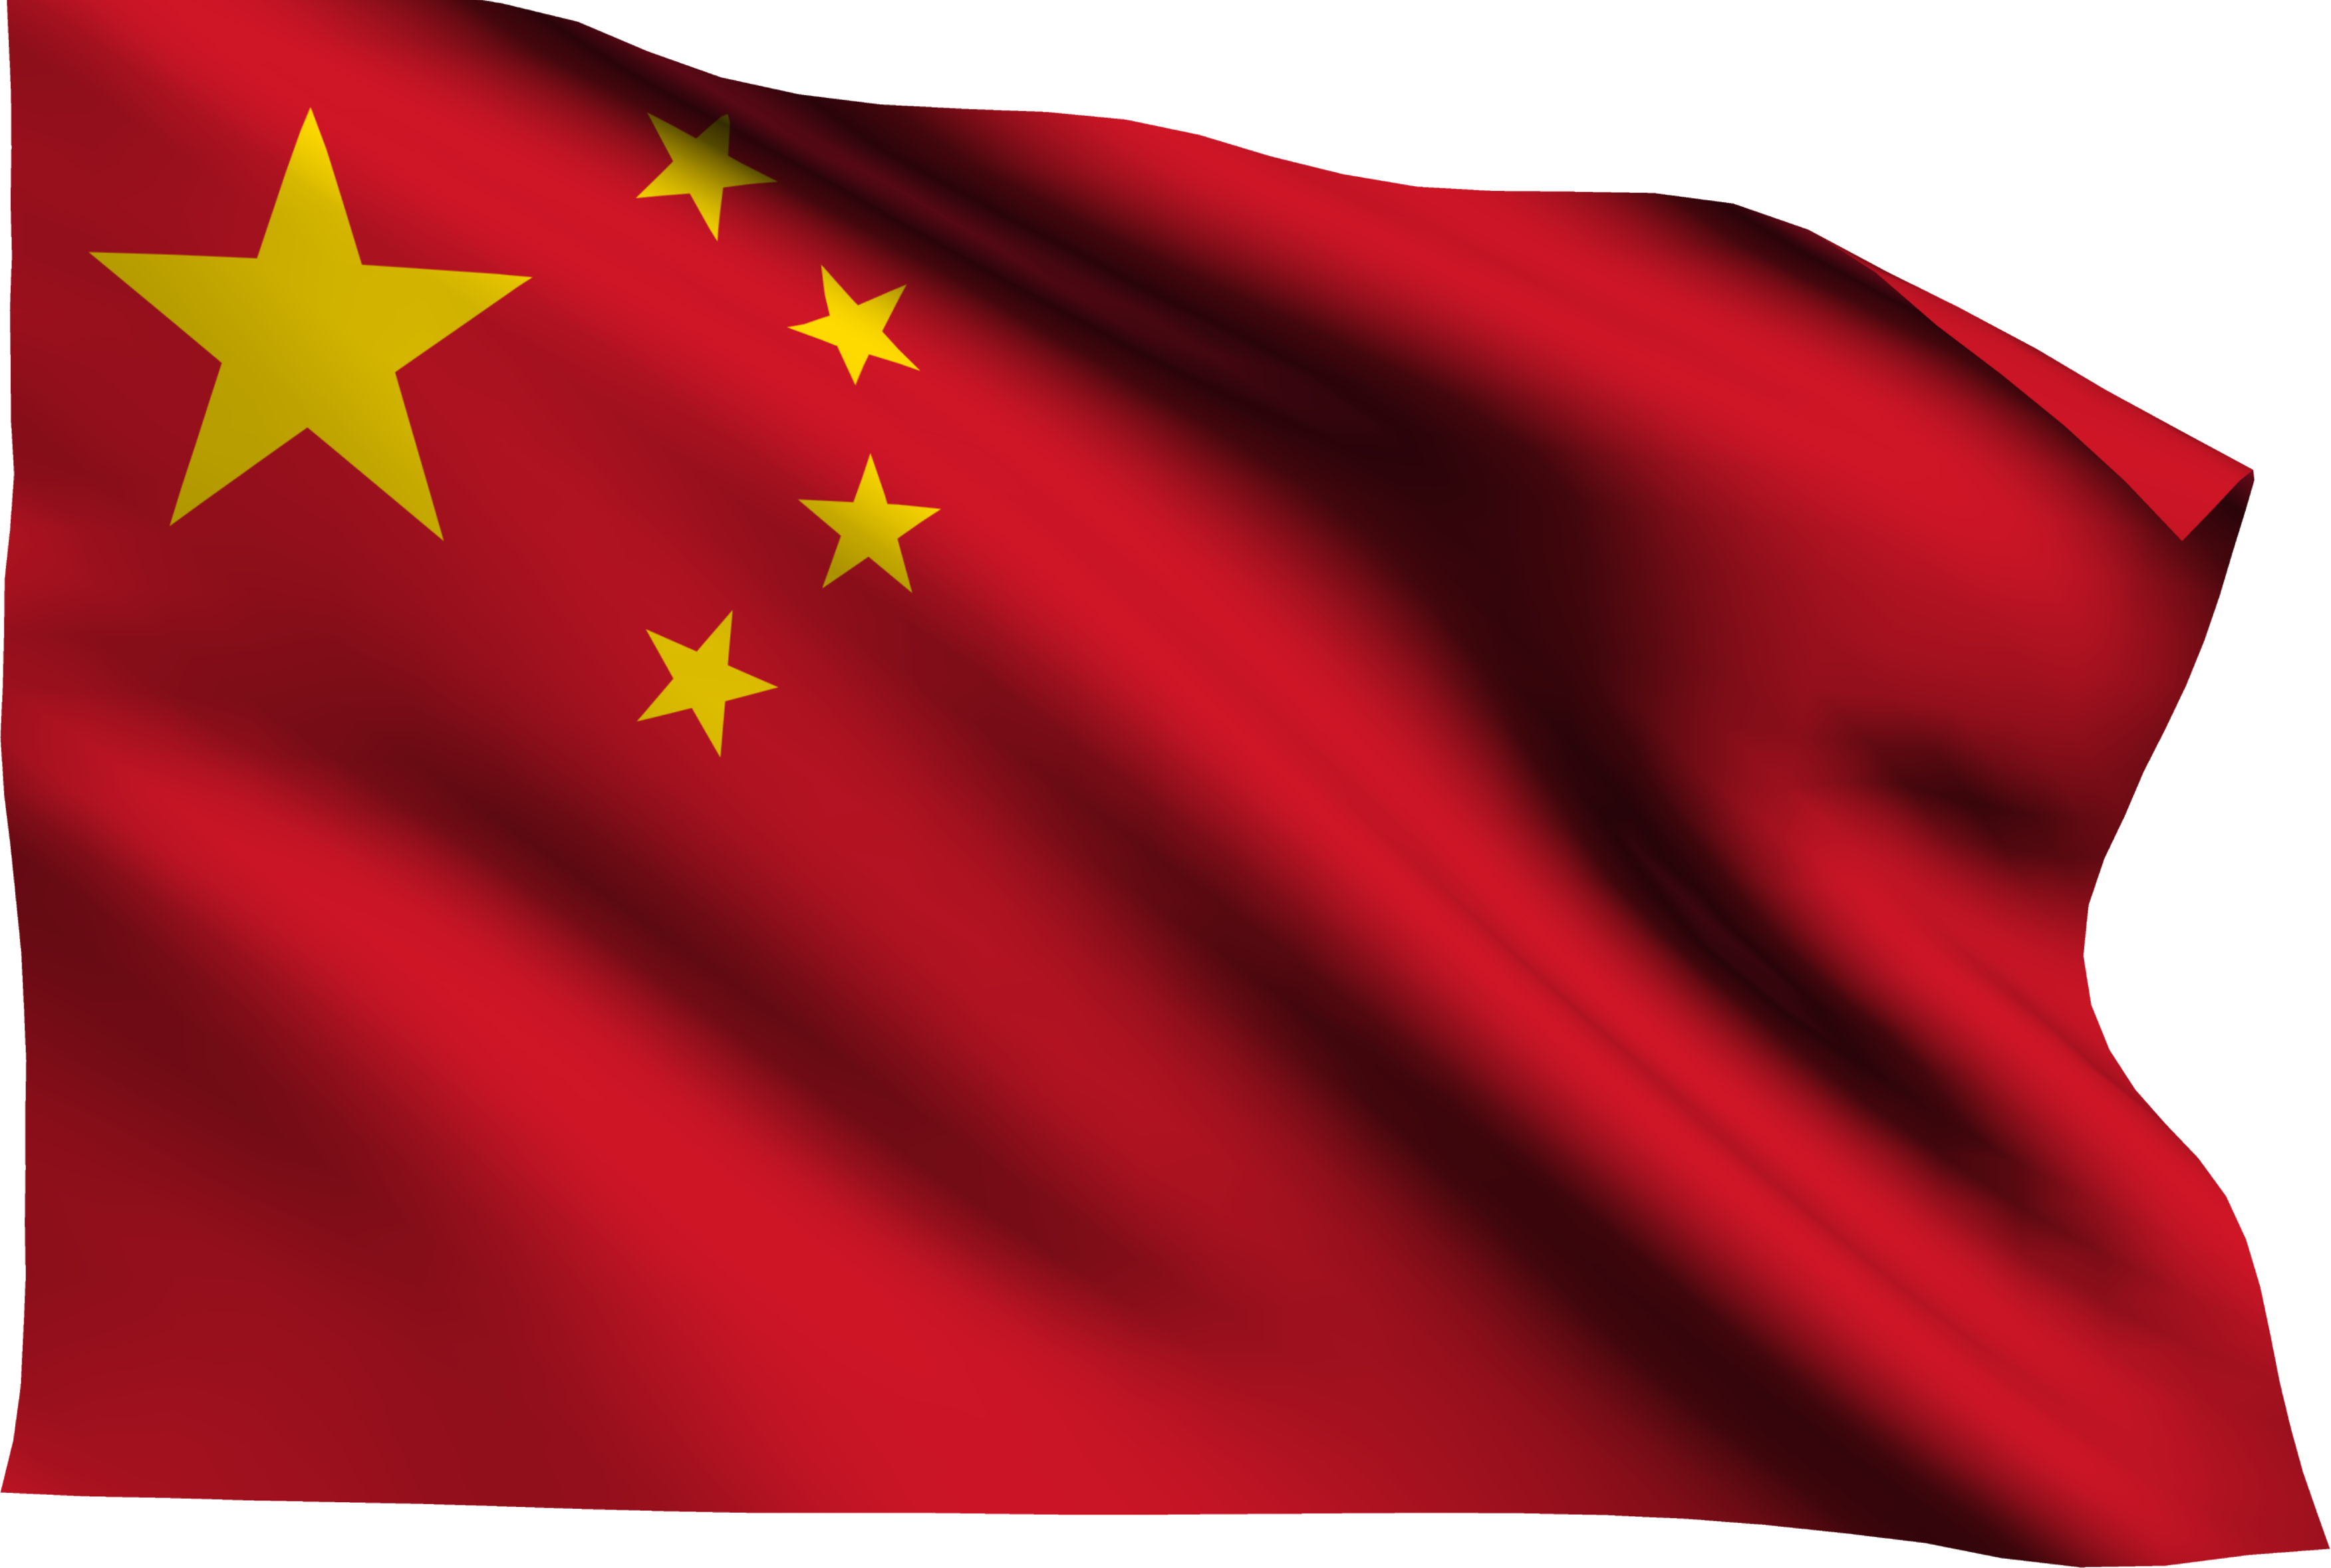 ธงชาติจีน